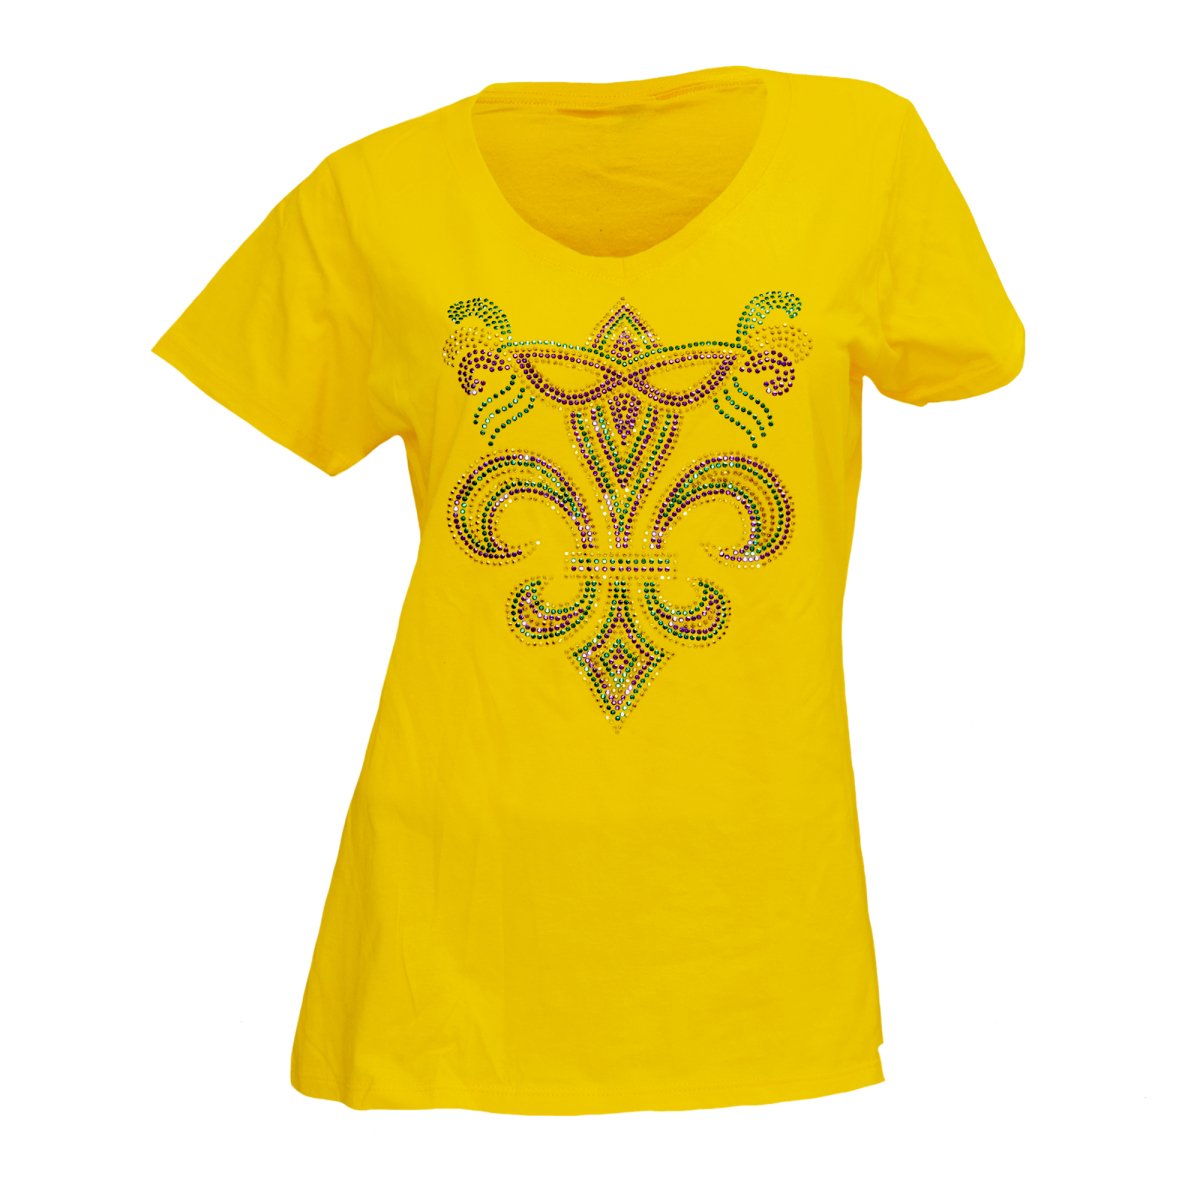 Ladies Mardi Gras Yellow Fleur De Lis And Mask Rhinestone V-Neck Tee-Shirt - Mardi Gras Apparel